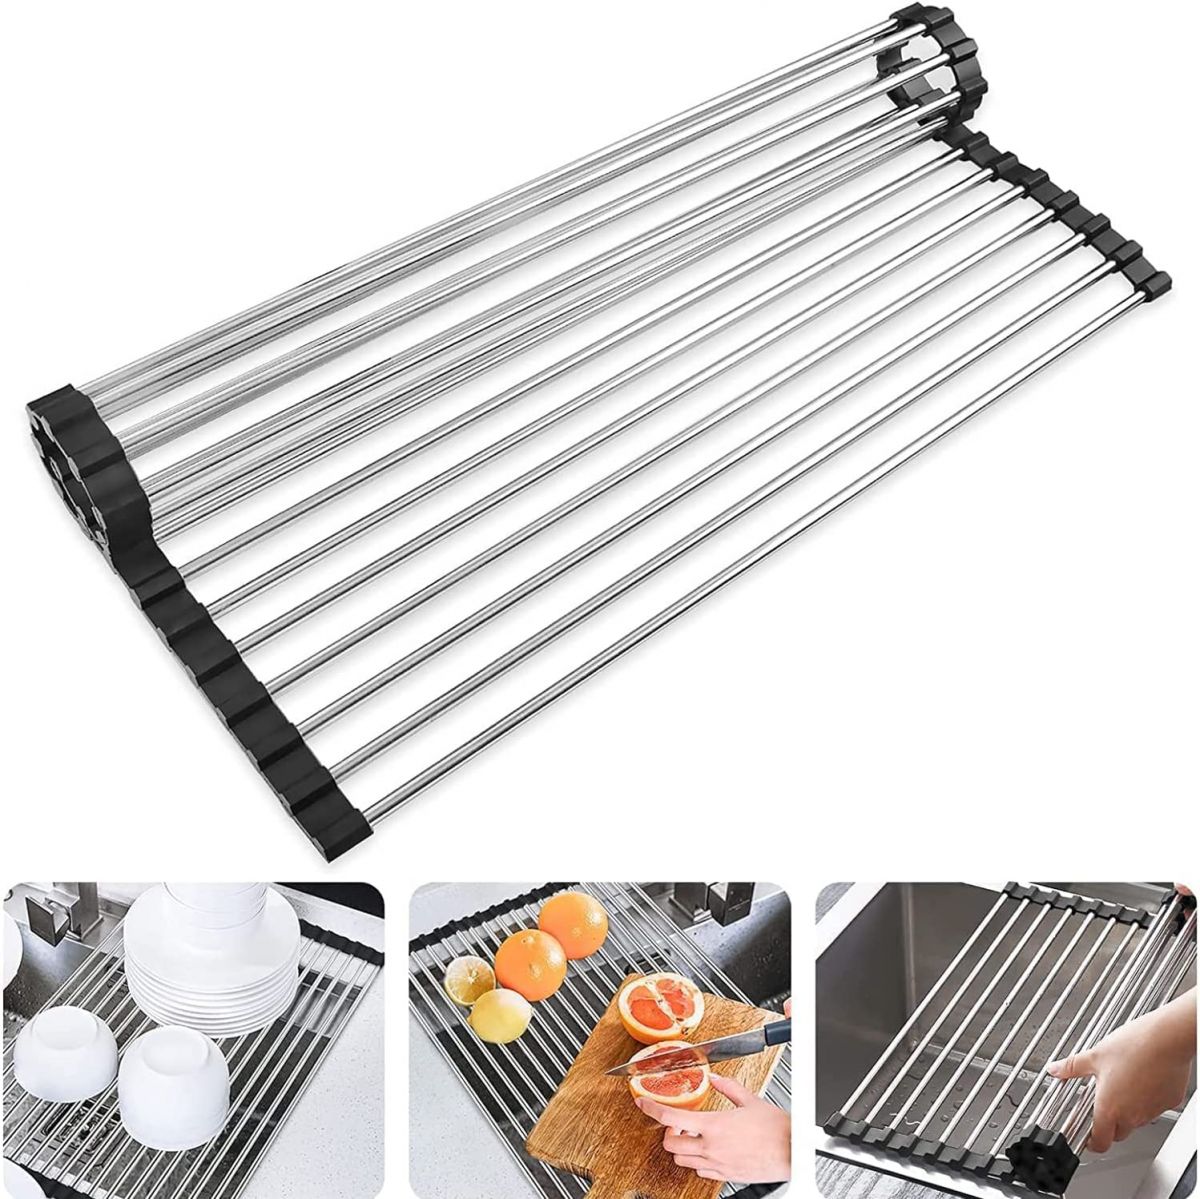 Dish drying rack 530 x 340 mm